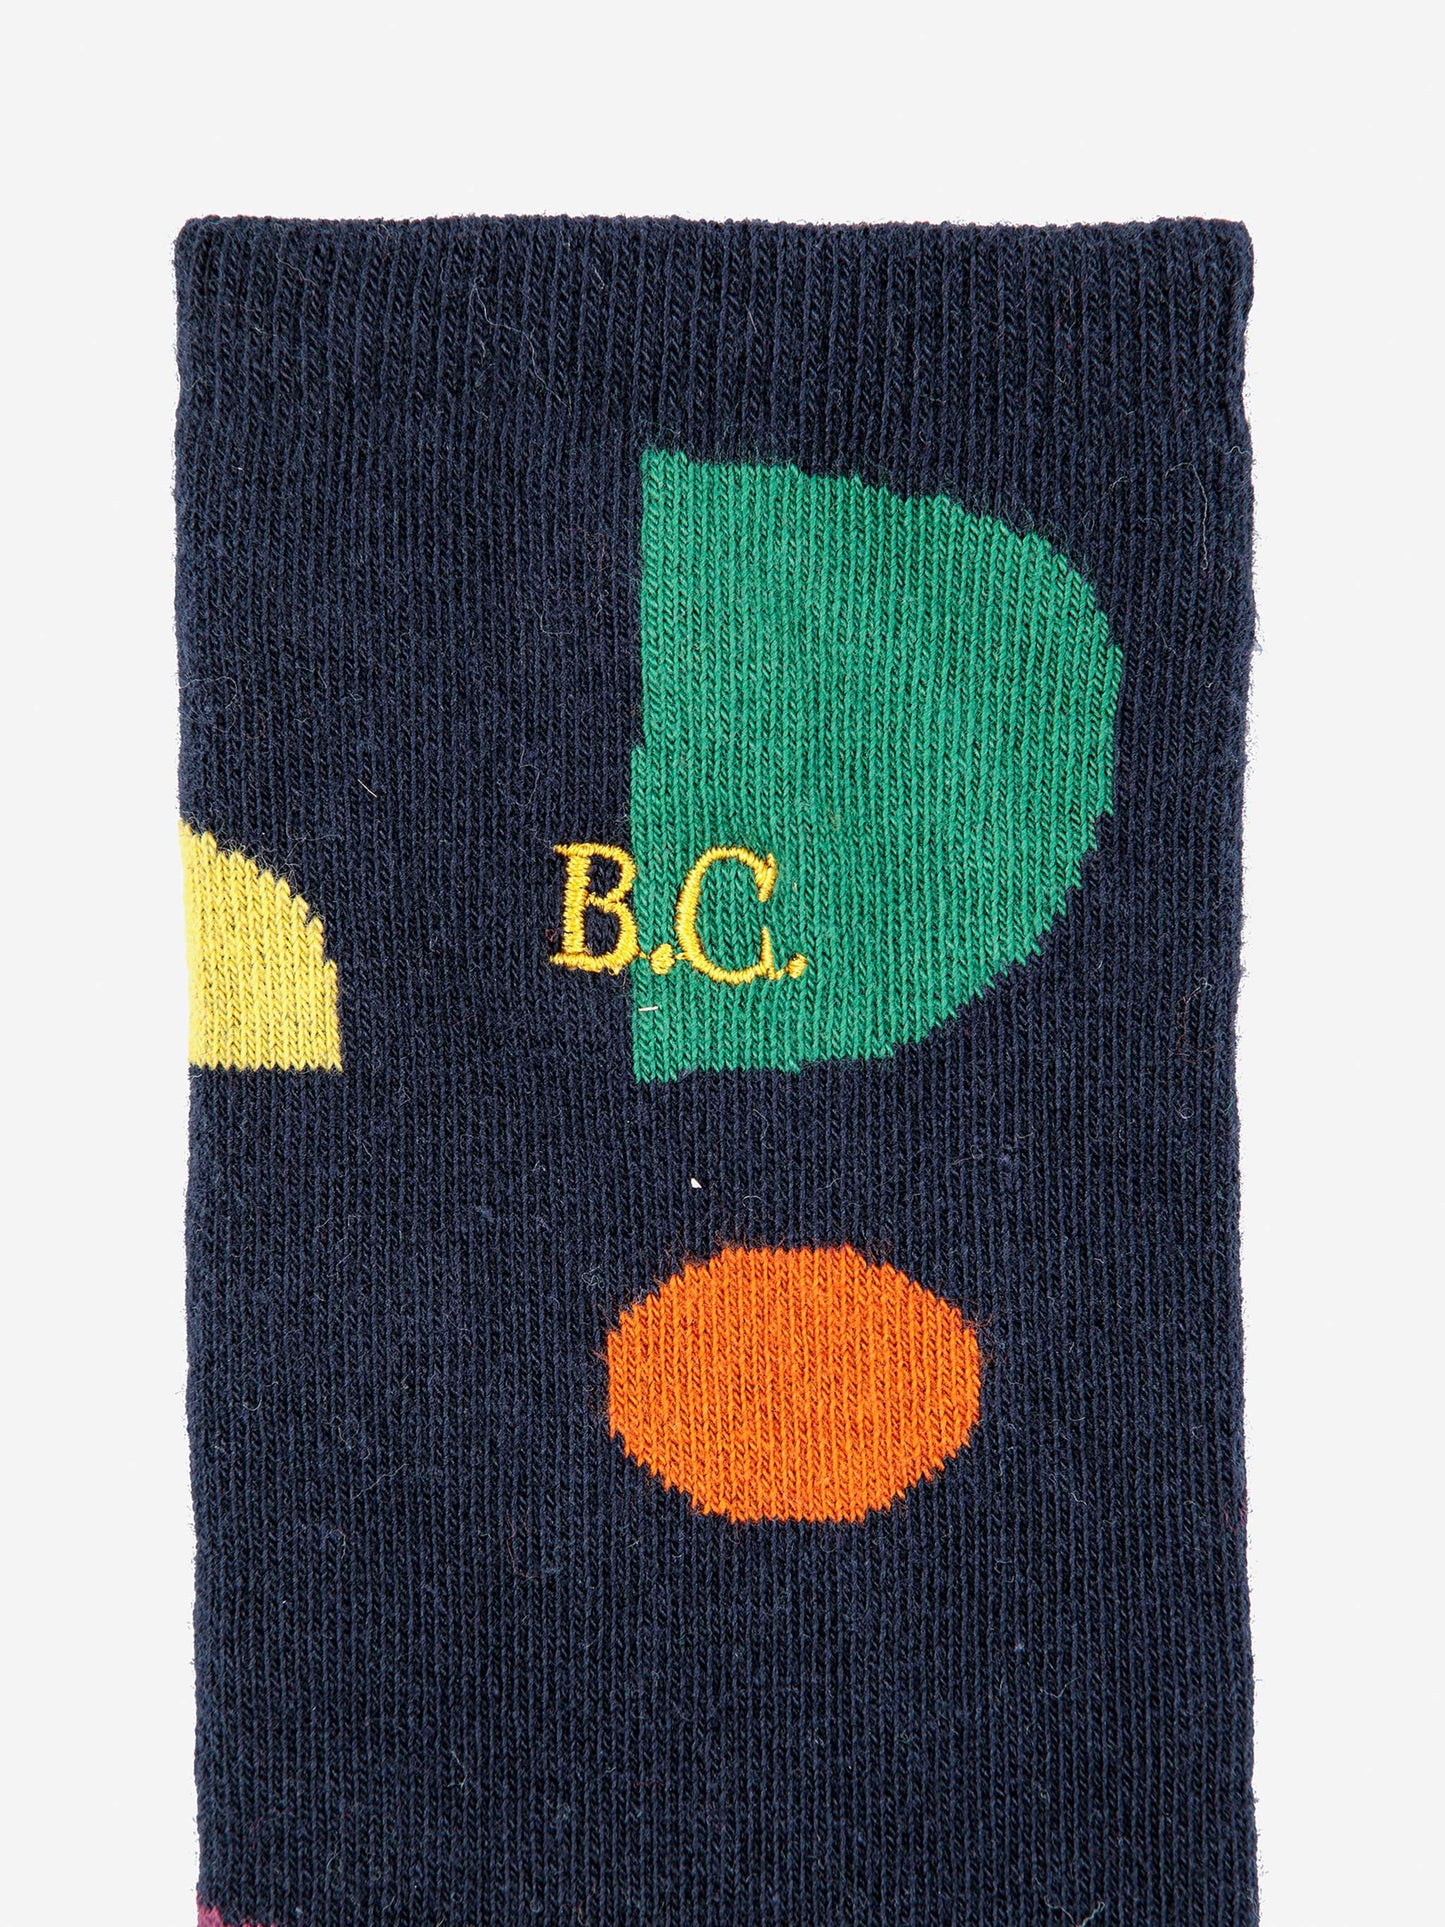 Bobo Choses Multicolour Shapes Long Socks